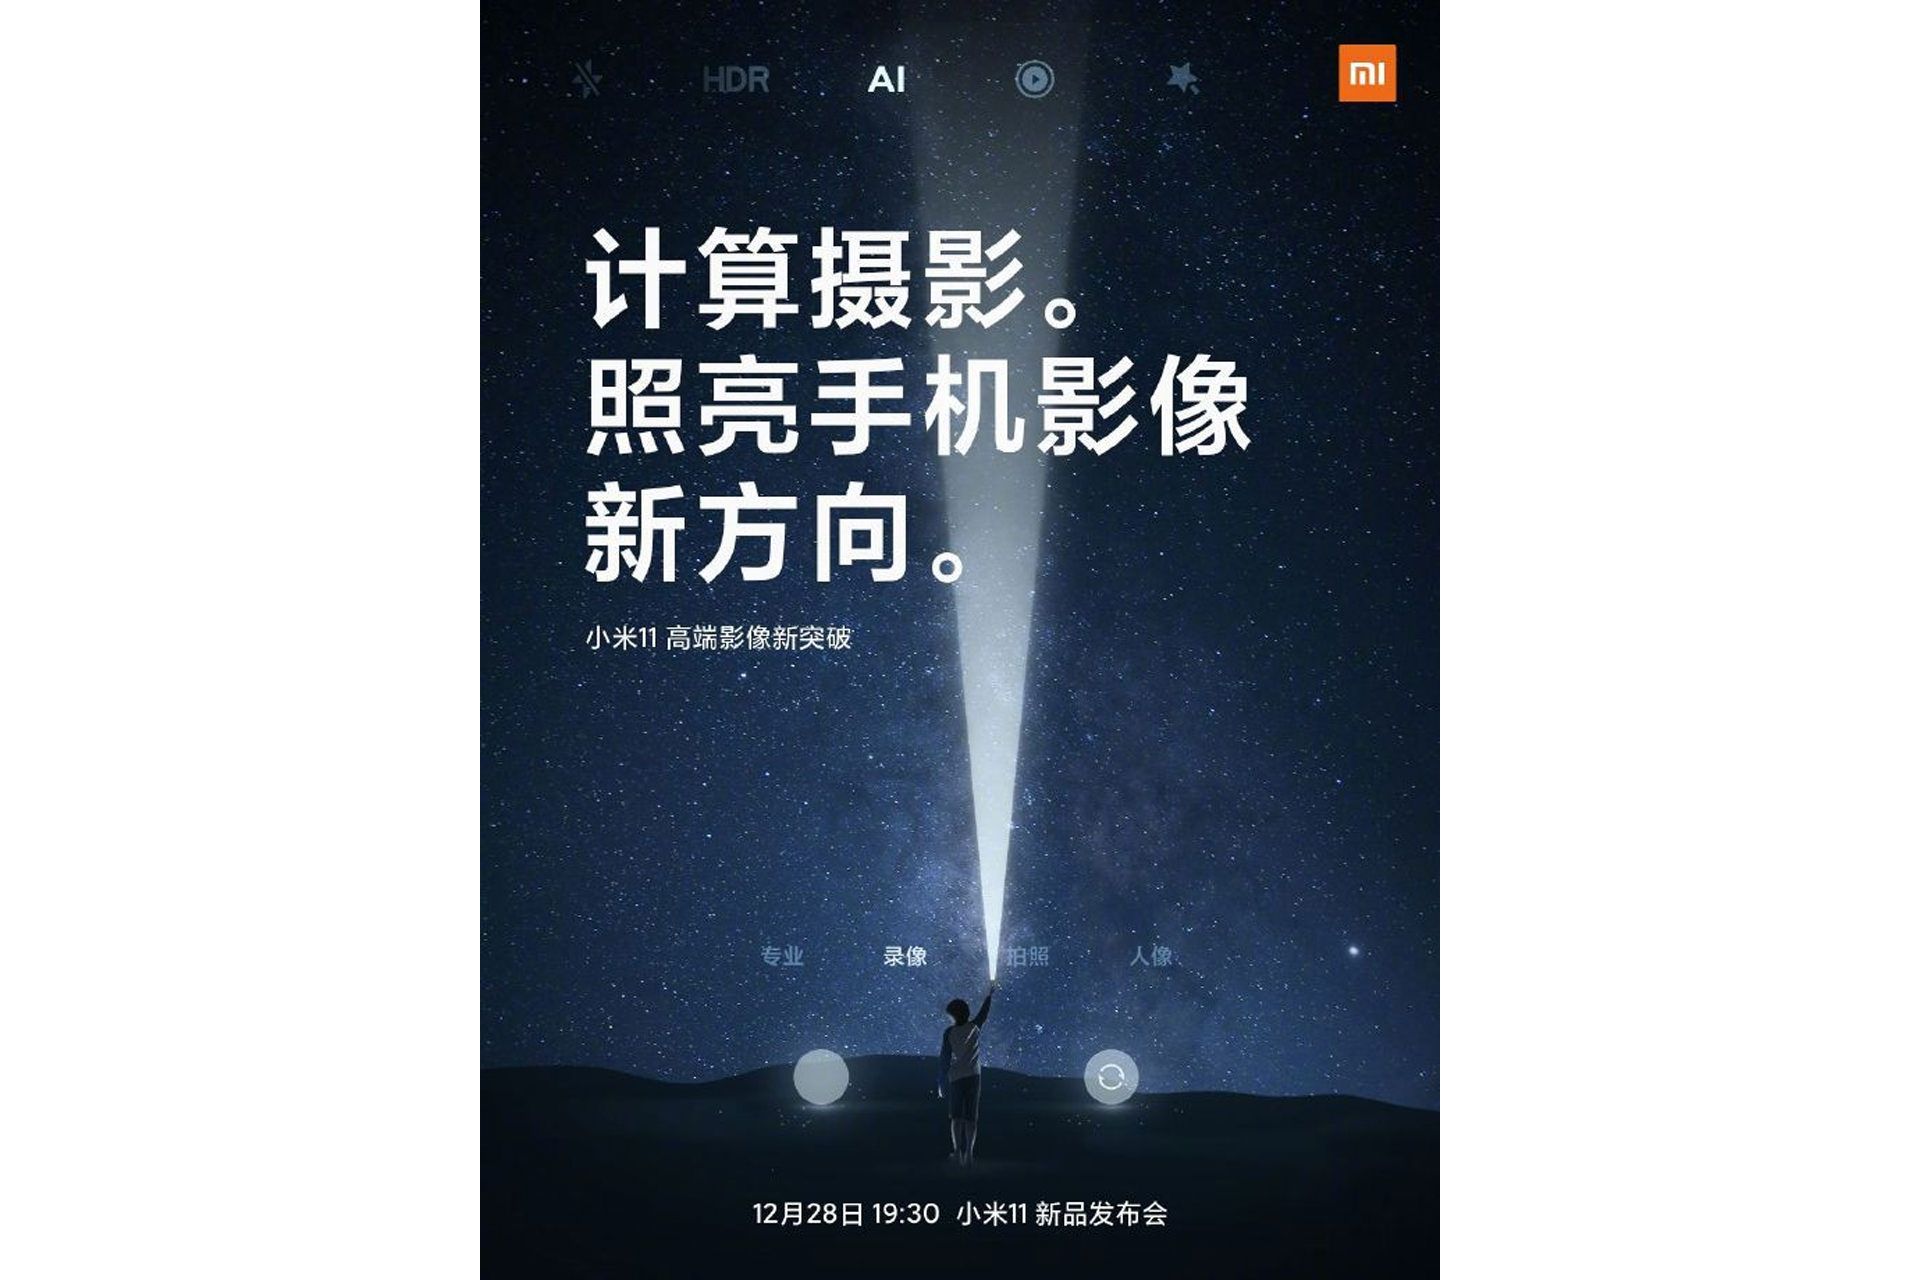 پوستر شیائومی می 11 / Xiaomi Mi 11 با محوریت عکاسی محاسباتی